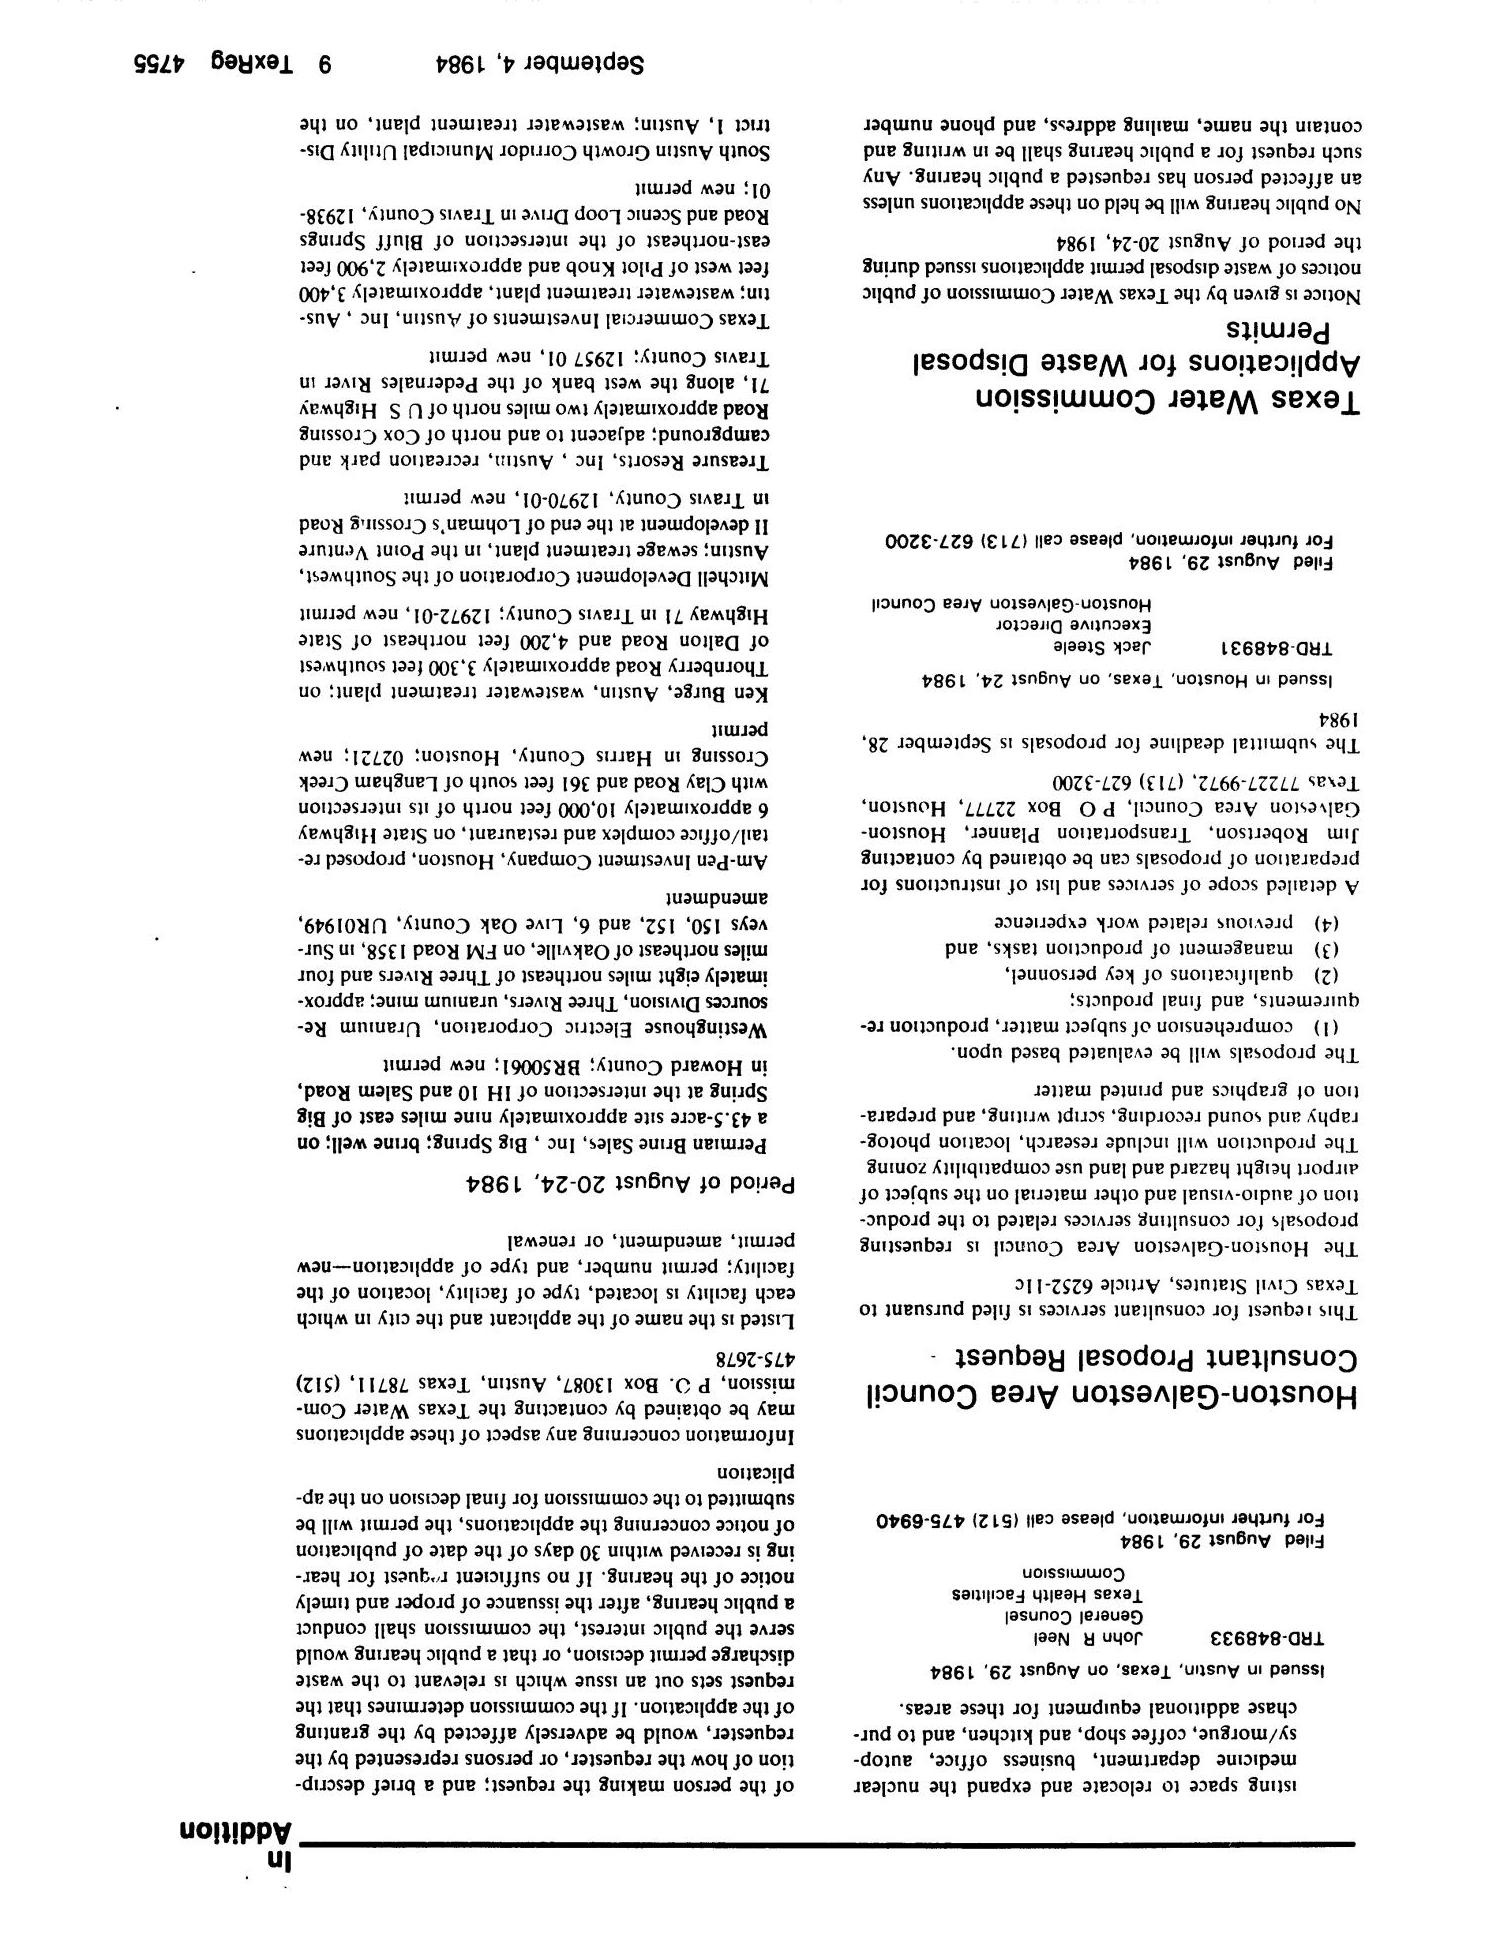 Texas Register, Volume 9, Number 66, Pages 4703-4756, September 4, 1984
                                                
                                                    4755
                                                